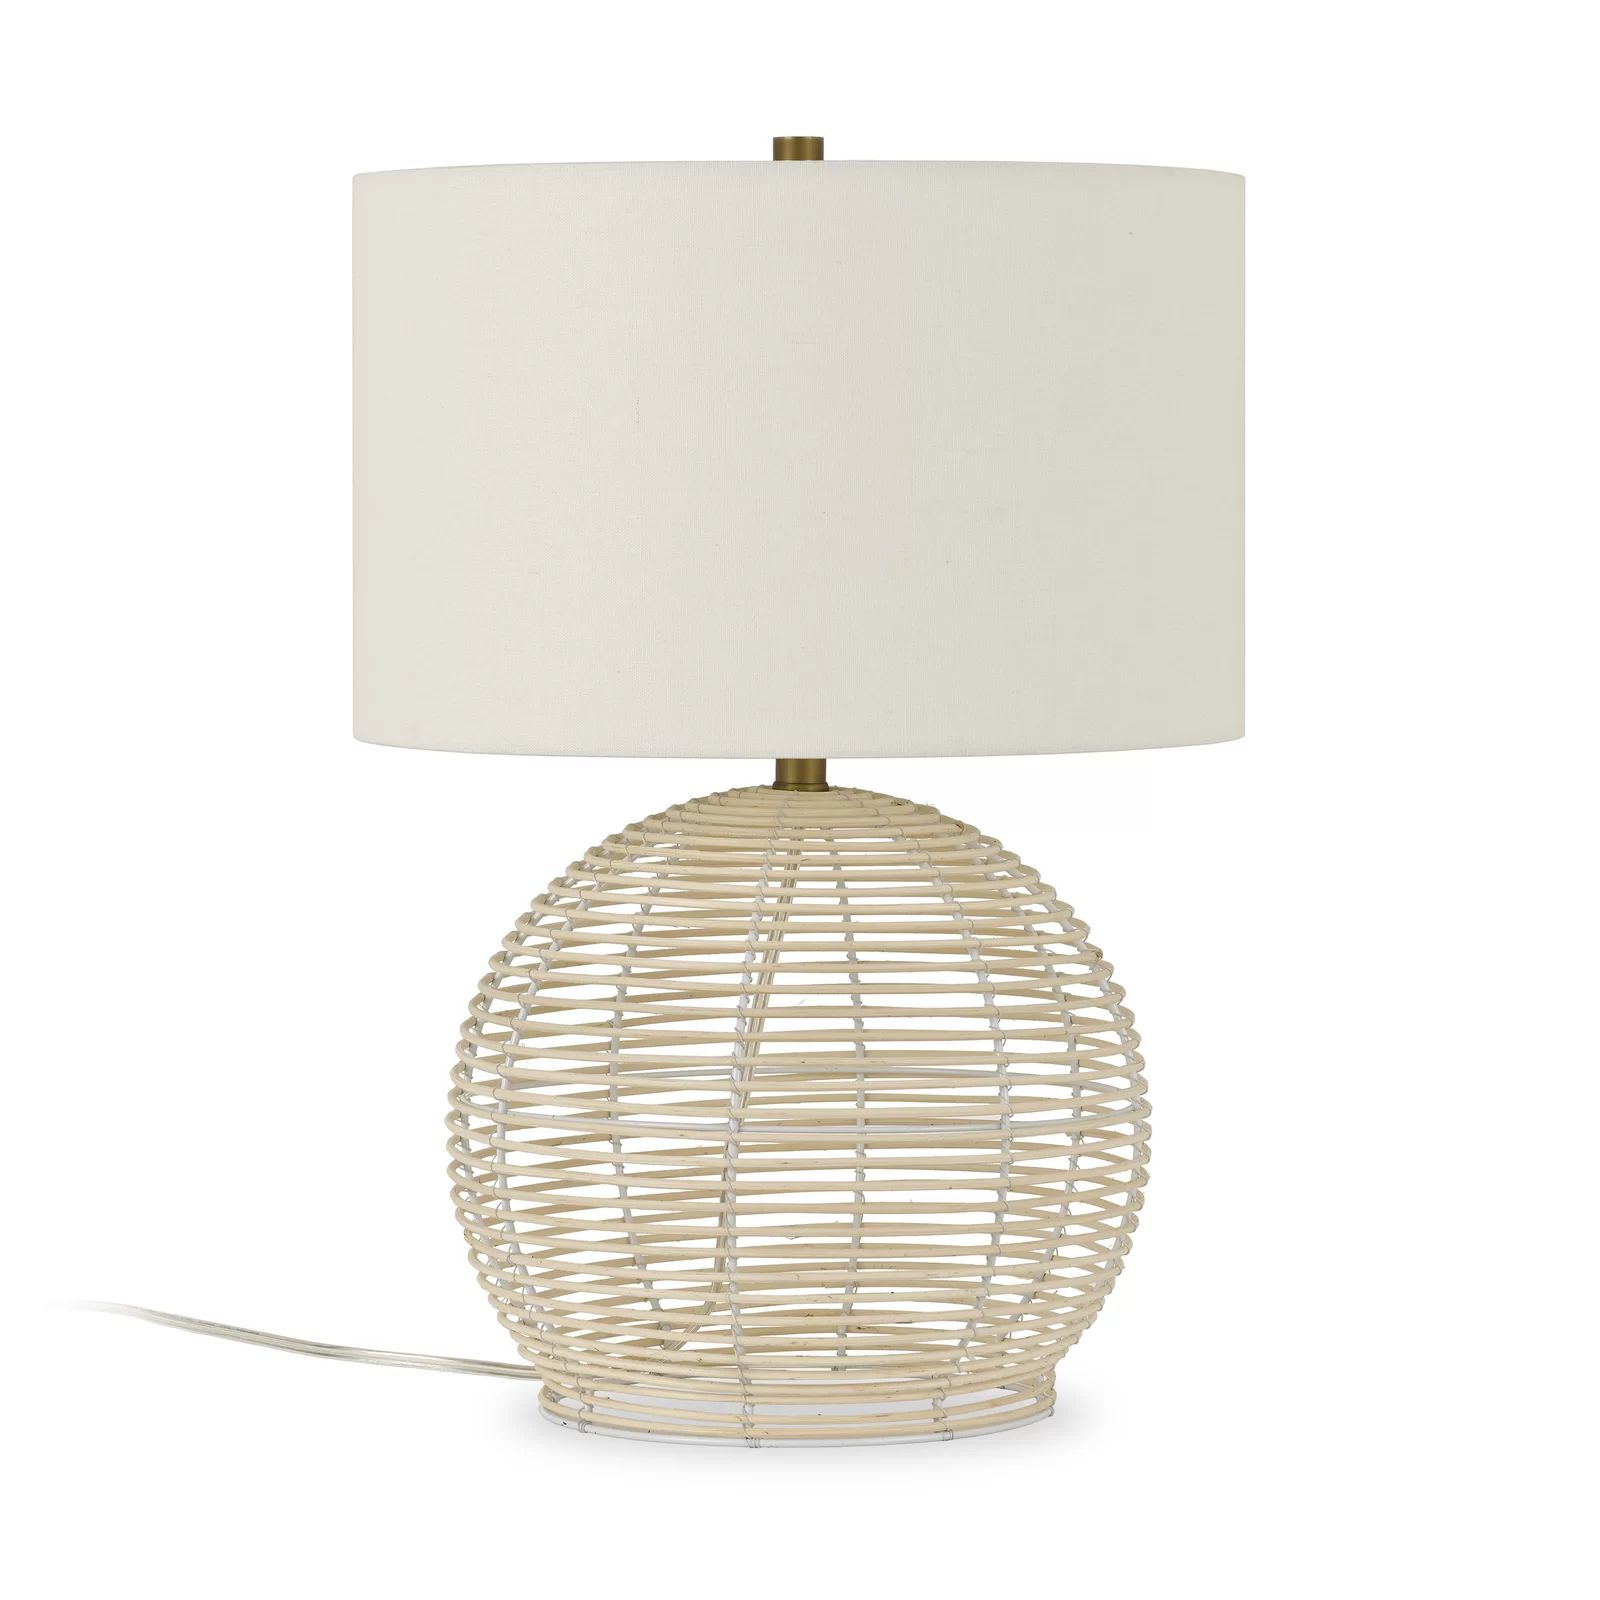 Edgware Rattan Lamp | Wayfair North America